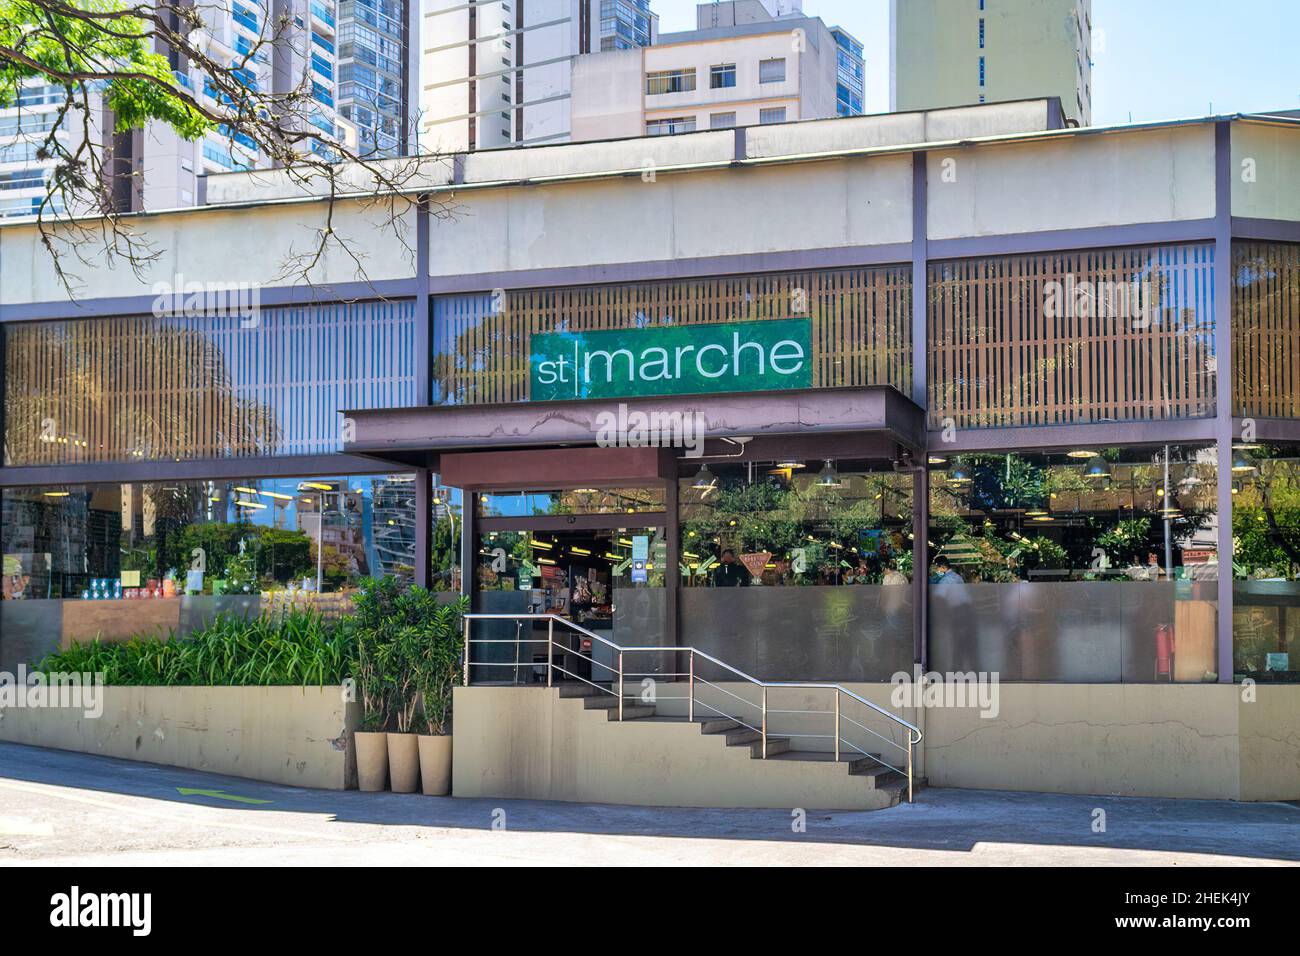 Façade ou bâtiment extérieur de l'entreprise de Saint-Marche dans le quartier de Sumaare à Sao Paulo, Brésil Banque D'Images